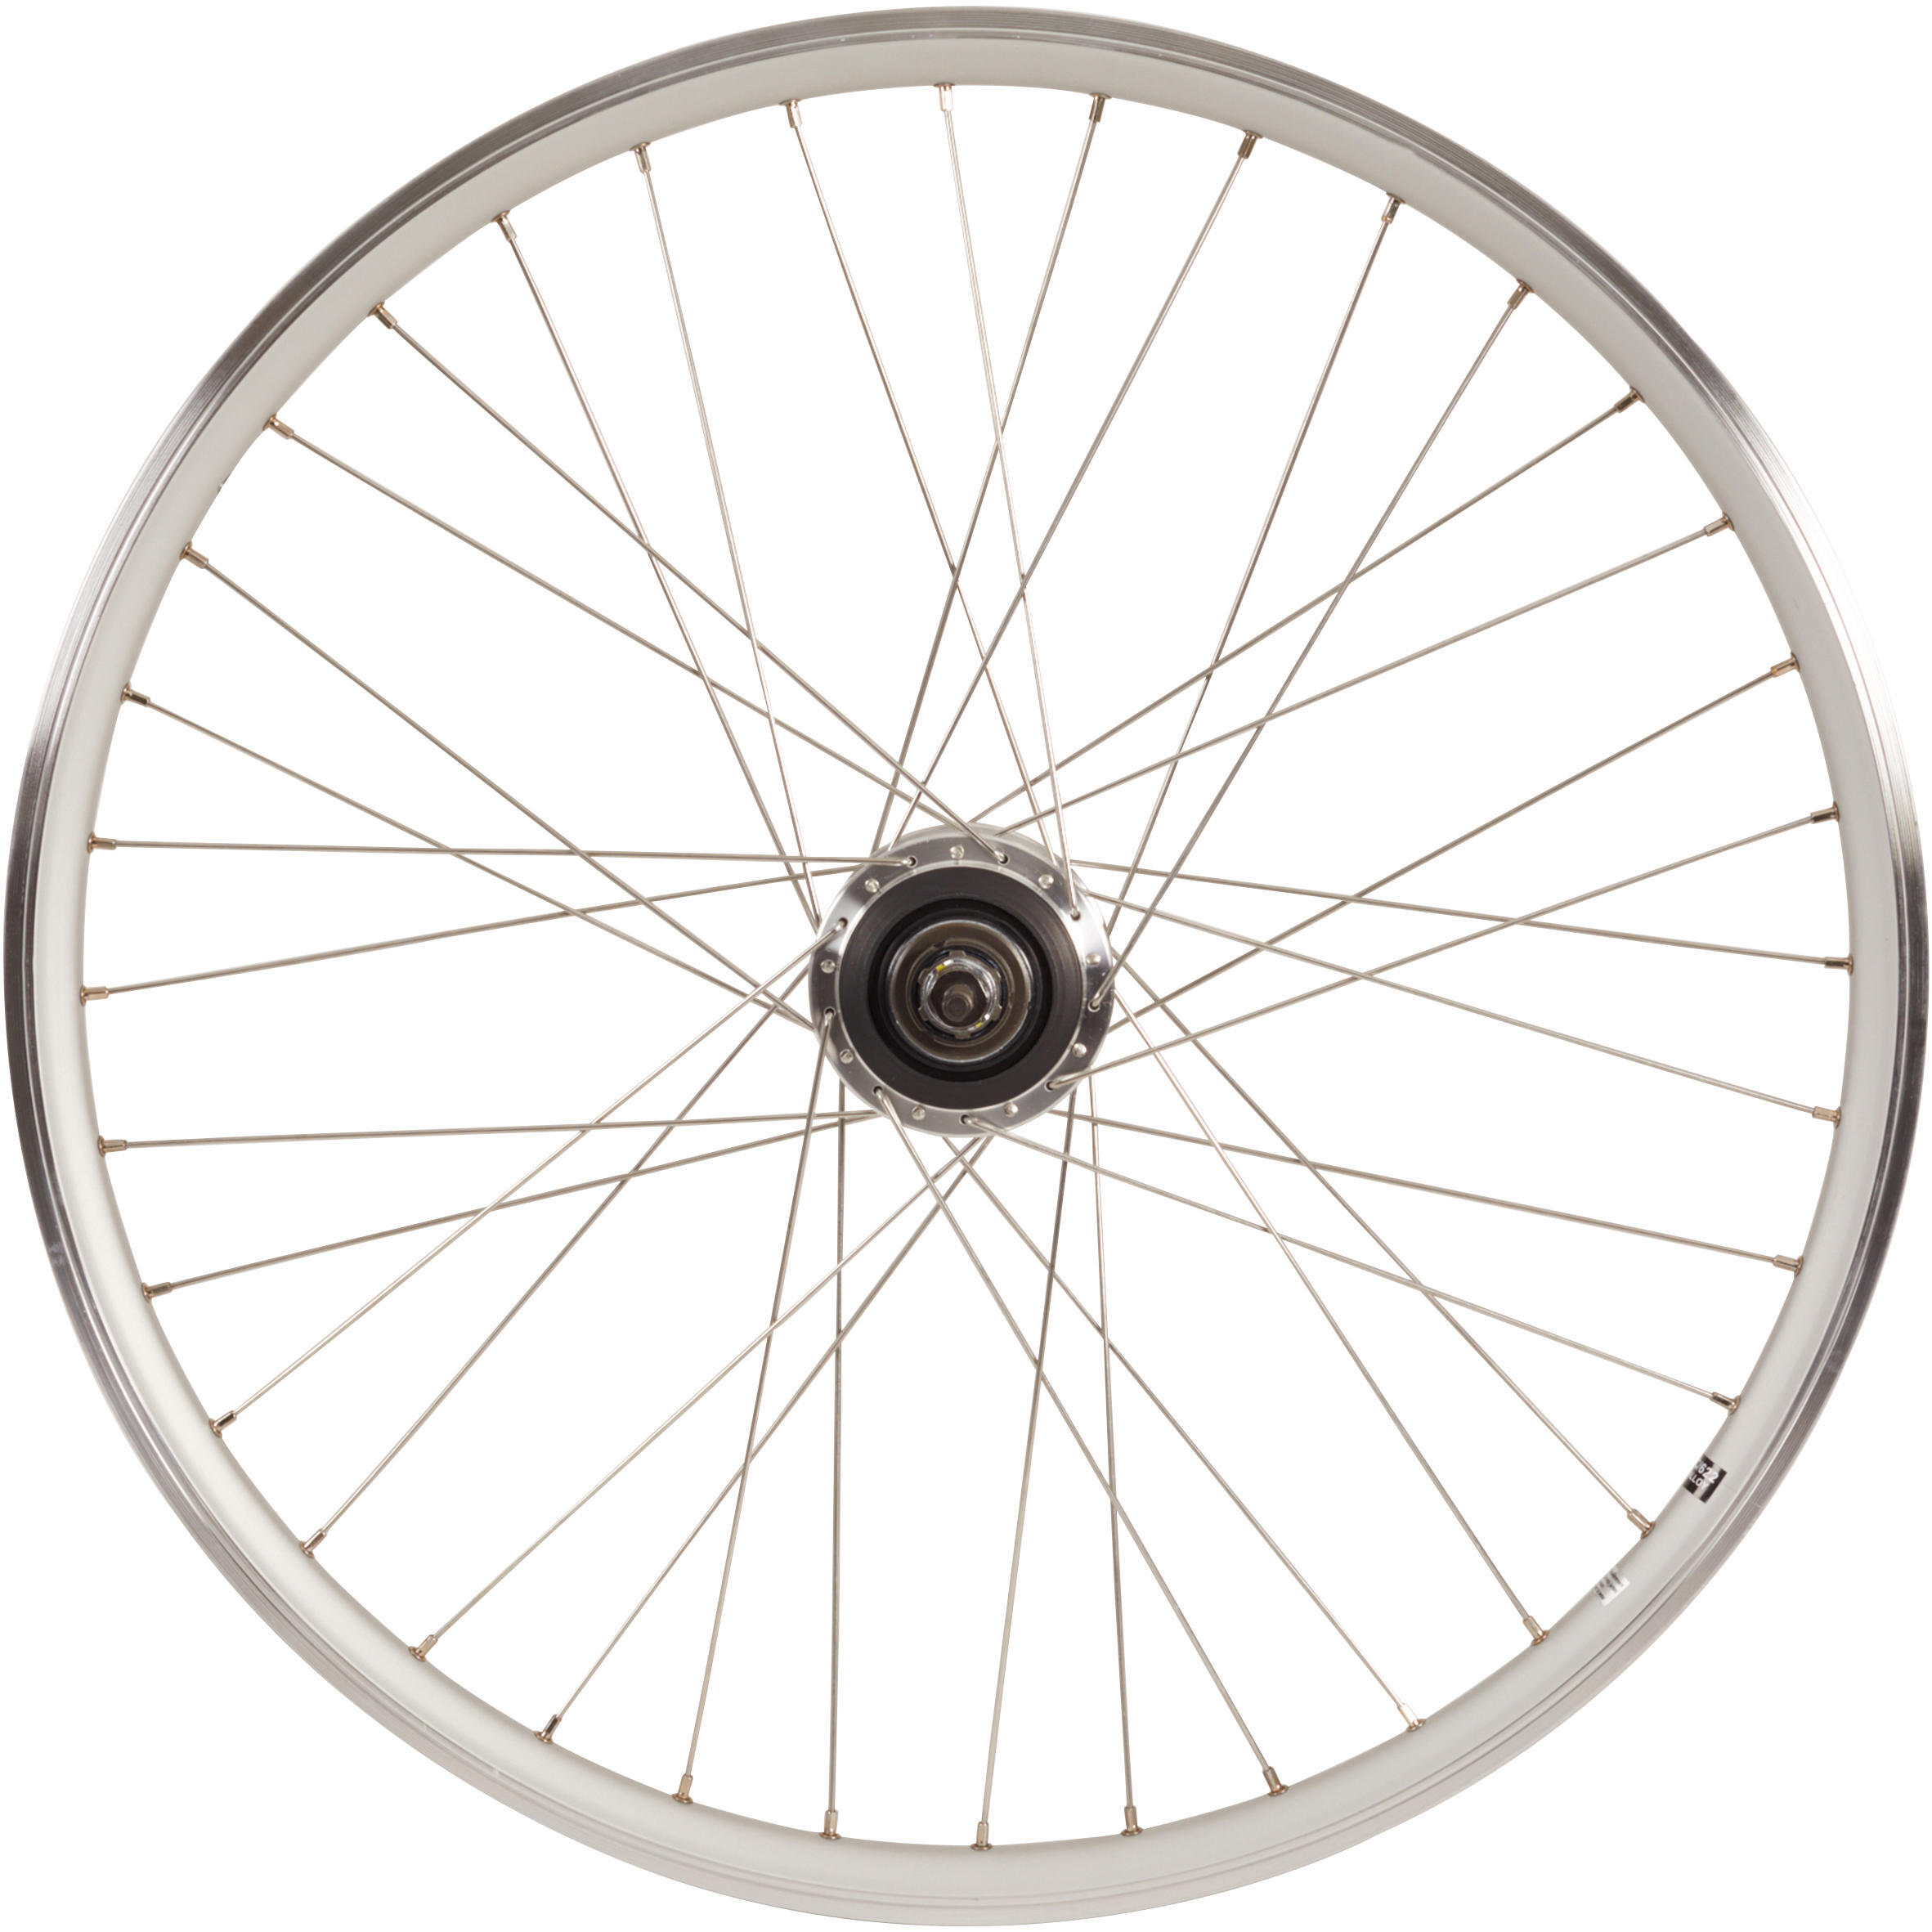 Заднее колесо крыльчатки 28-дюймовый обод для городского велосипеда с двойными стенками Nexus7 серебристый Elops 920, серебро чехол mypads e vano для vkworld vk6735x